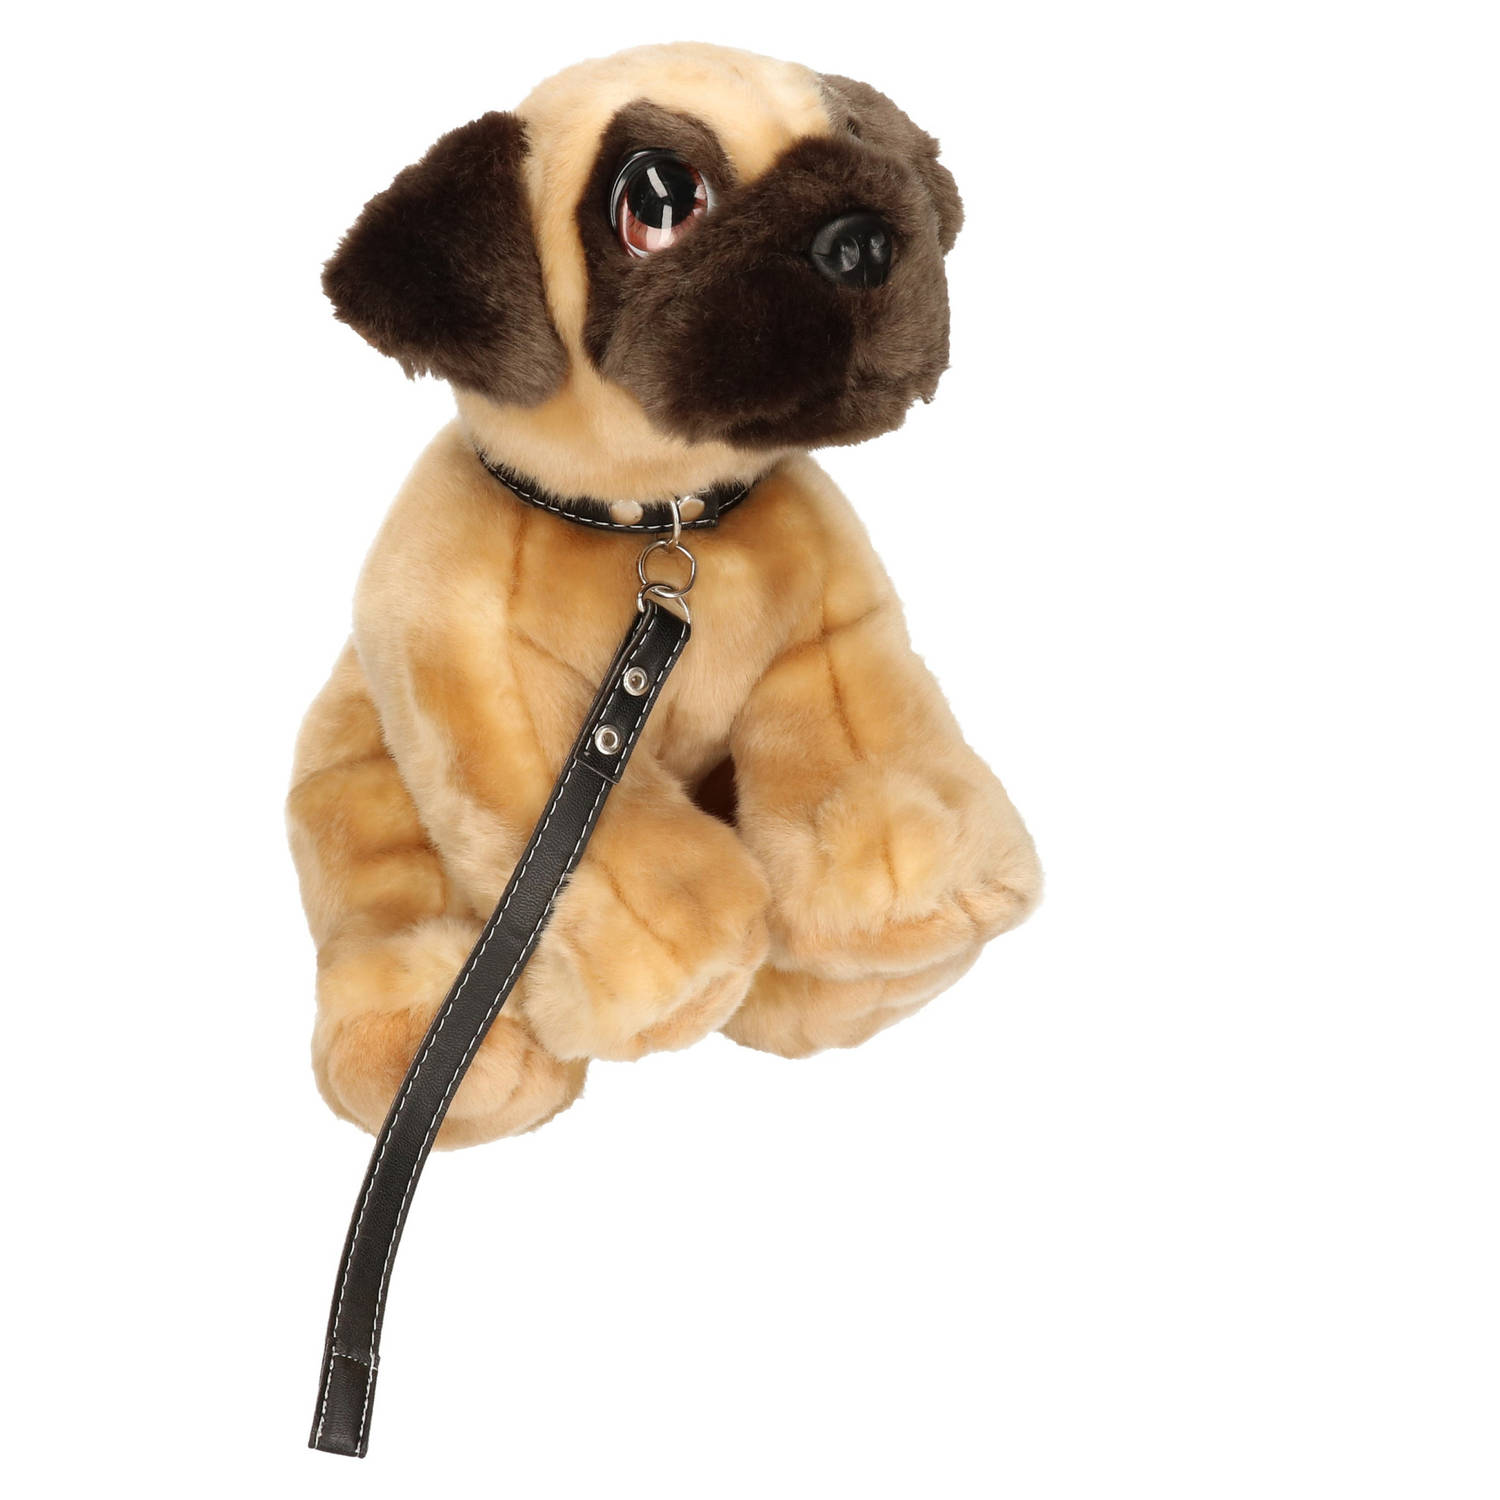 Keel Toys Pluche Hond Bruine Mopshond-Pug Met Riem Knuffel 30cm Knuffel Huisdieren